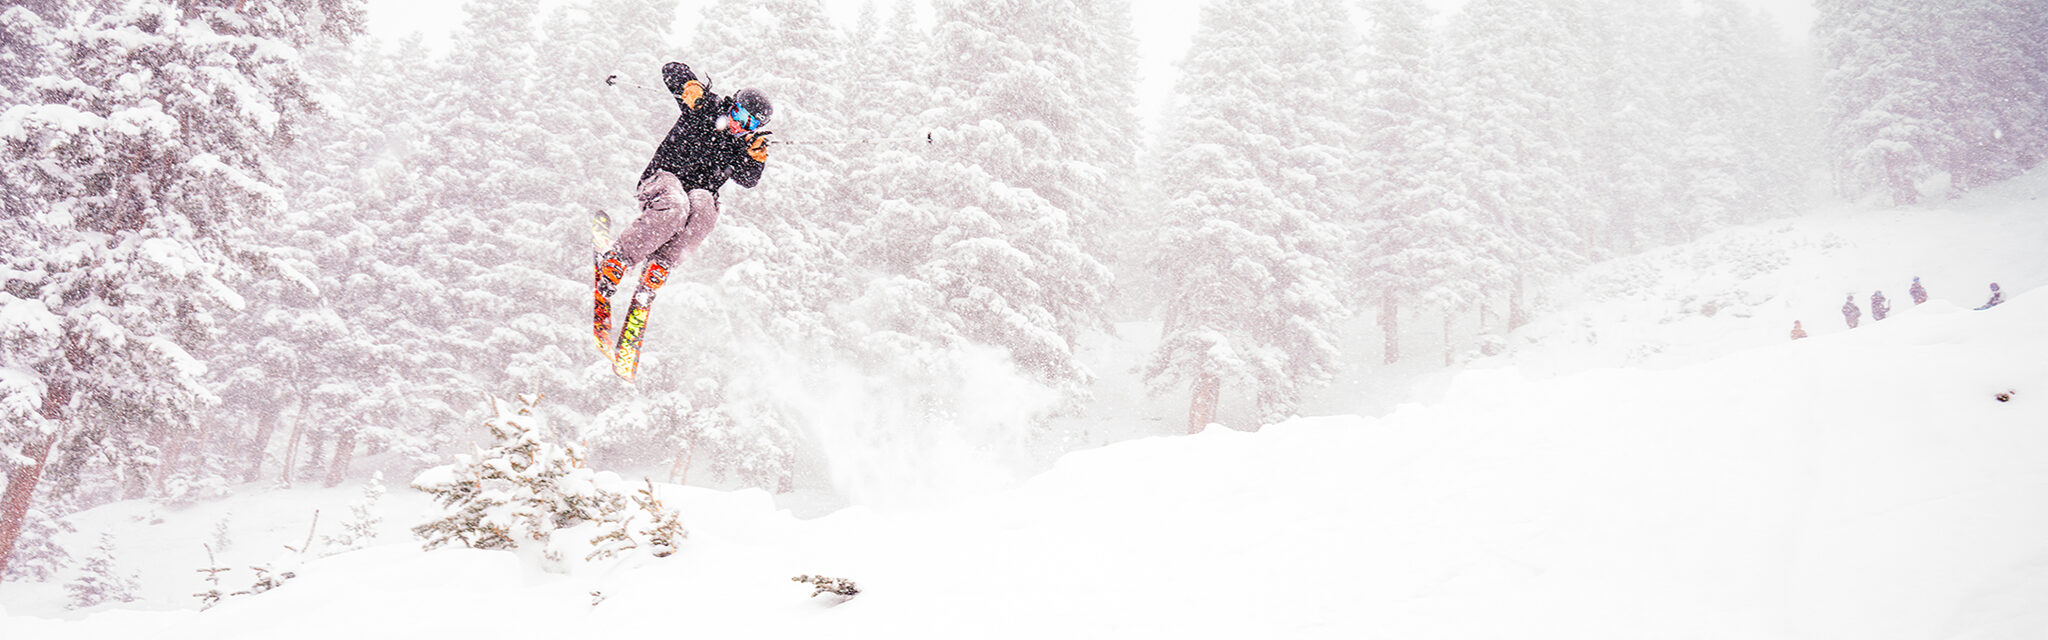 A lone skier flies sideways through the air on a snowy day.